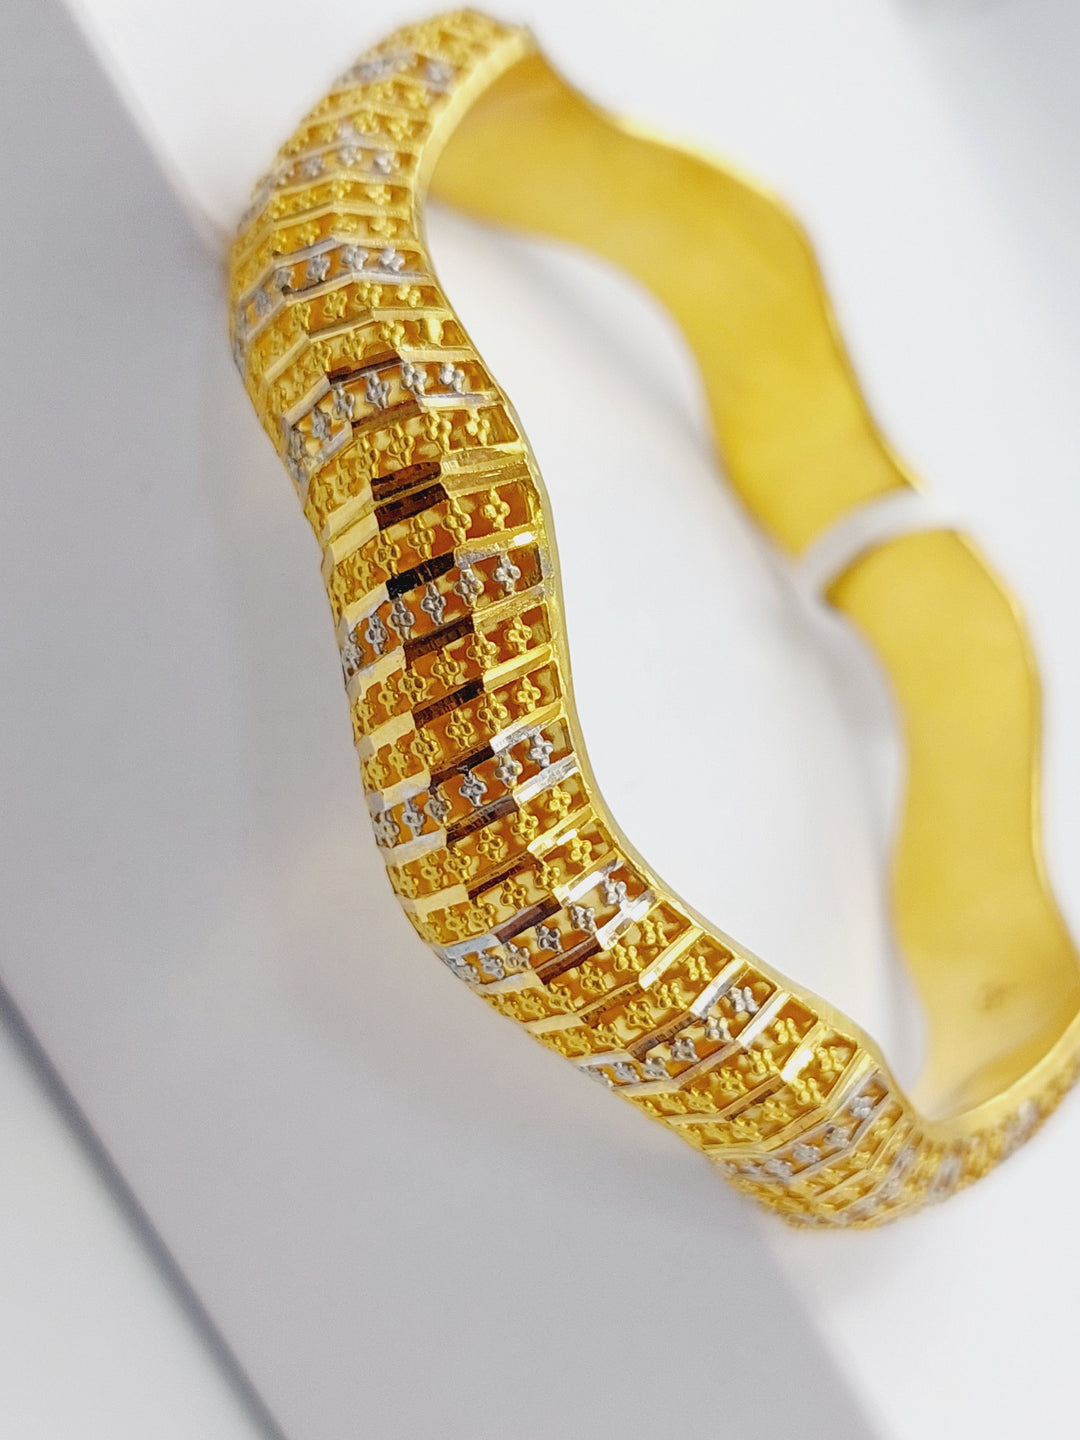 21K Gold Colored Kuwaiti Bangle by Saeed Jewelry - Image 1